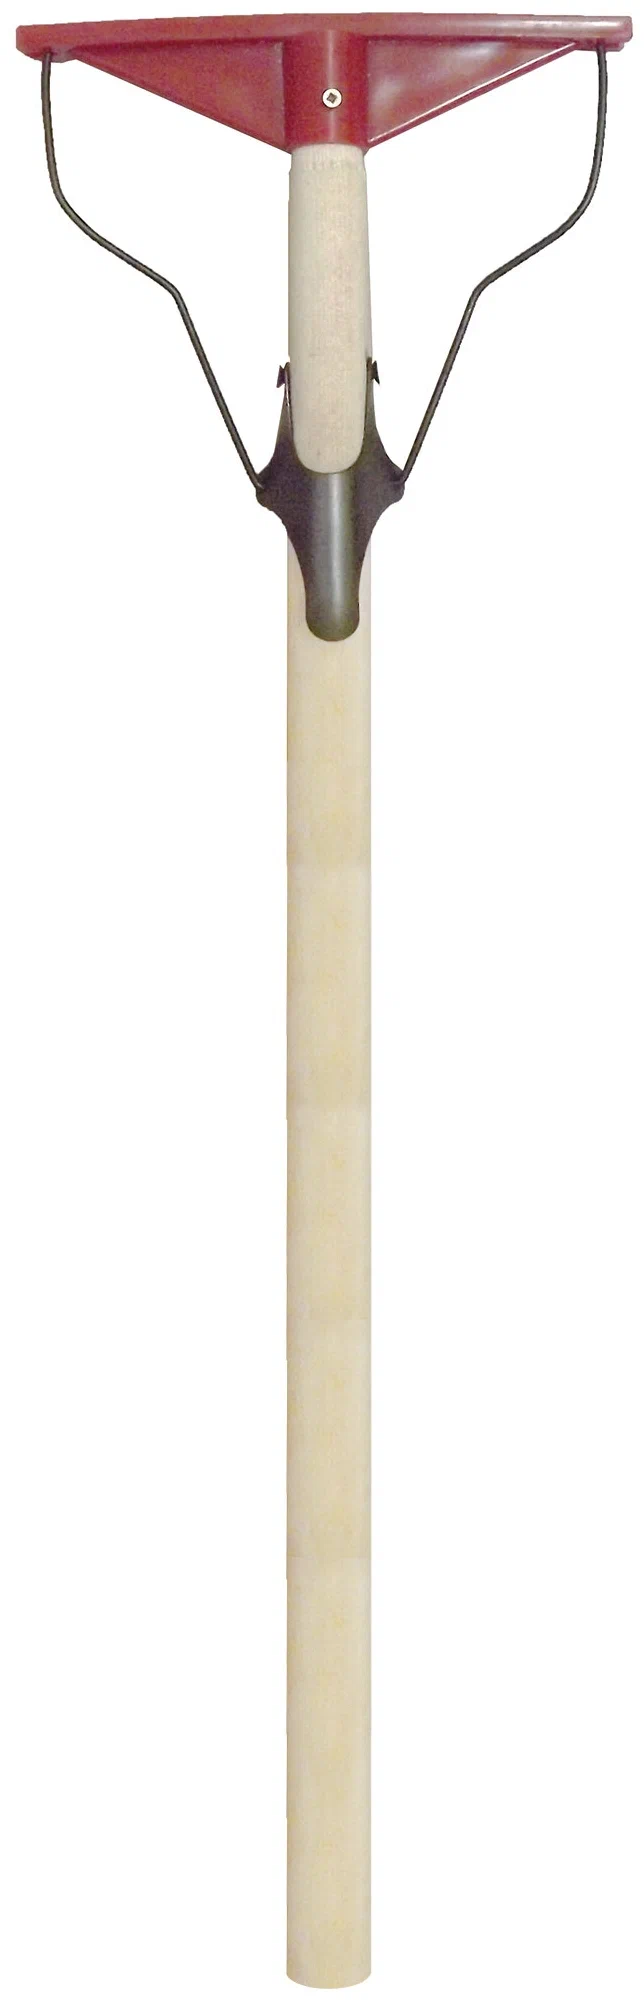 РемоКолор Швабра Лентяйка, деревянная ручка, пластиковое основание, 195мм, 60-2-205